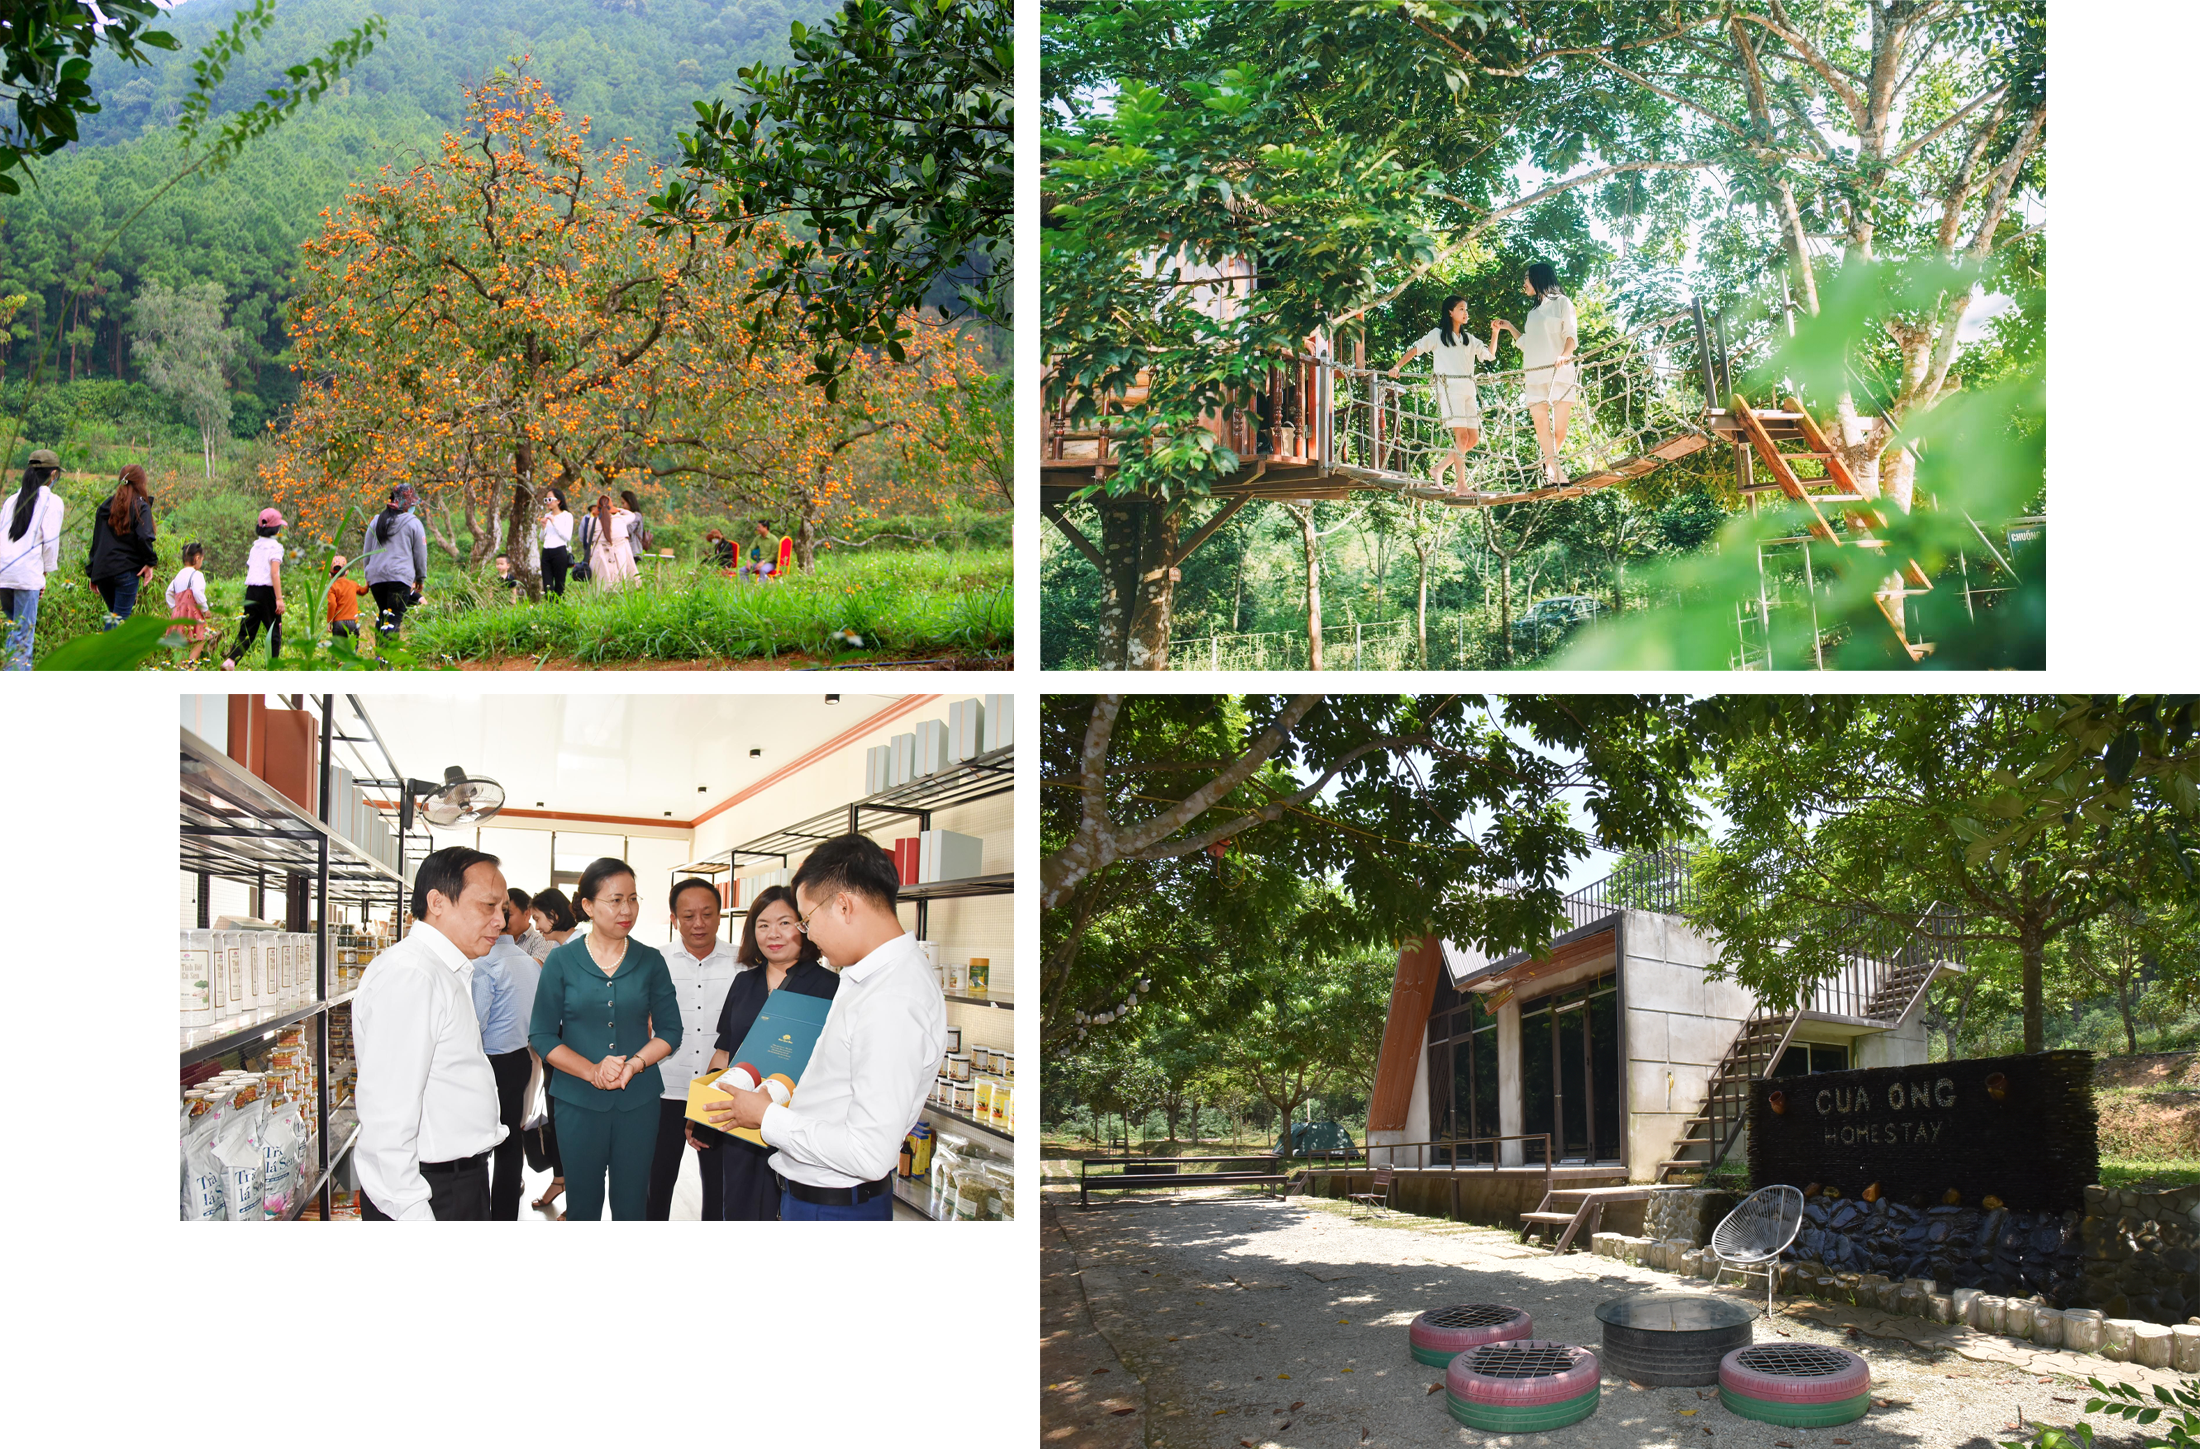 Nam Đàn đang chú trọng phát triển các mô hình kinh tế trang trại kết hợp du lịch sinh thái, du lịch trải nghiệm, homestay. Ảnh: Quang An - Thanh Lê - CSCC